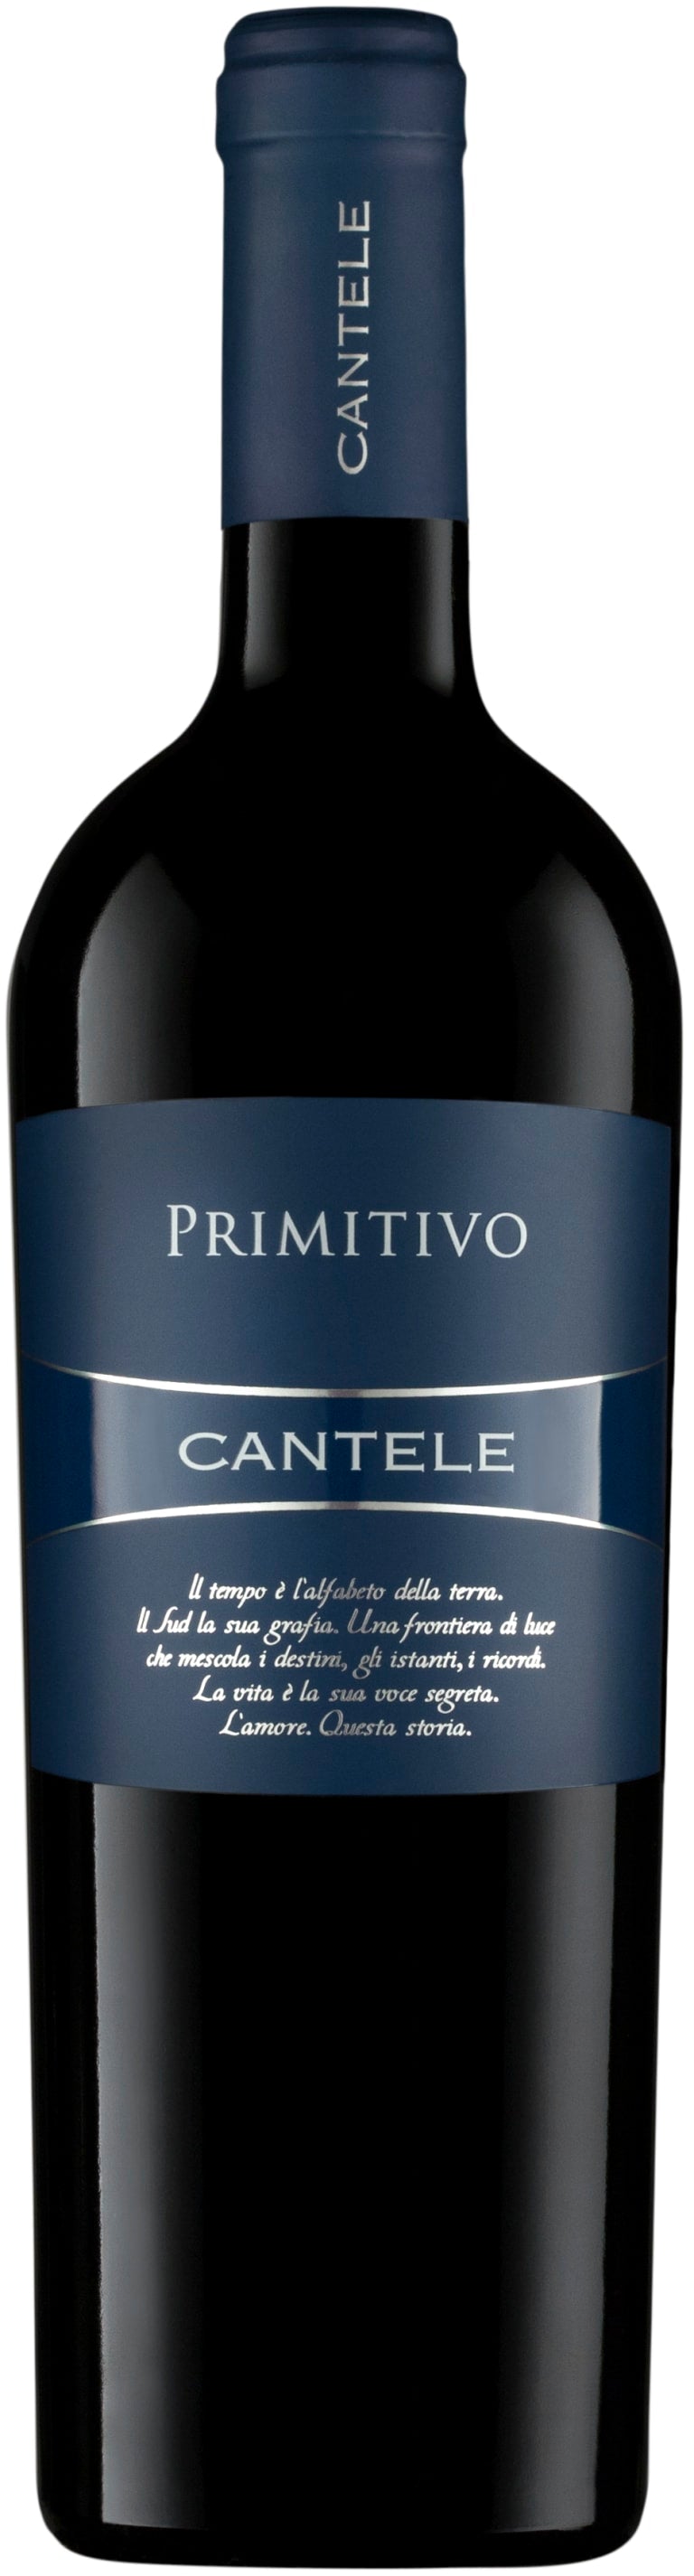 Cantele Primitivo 2017